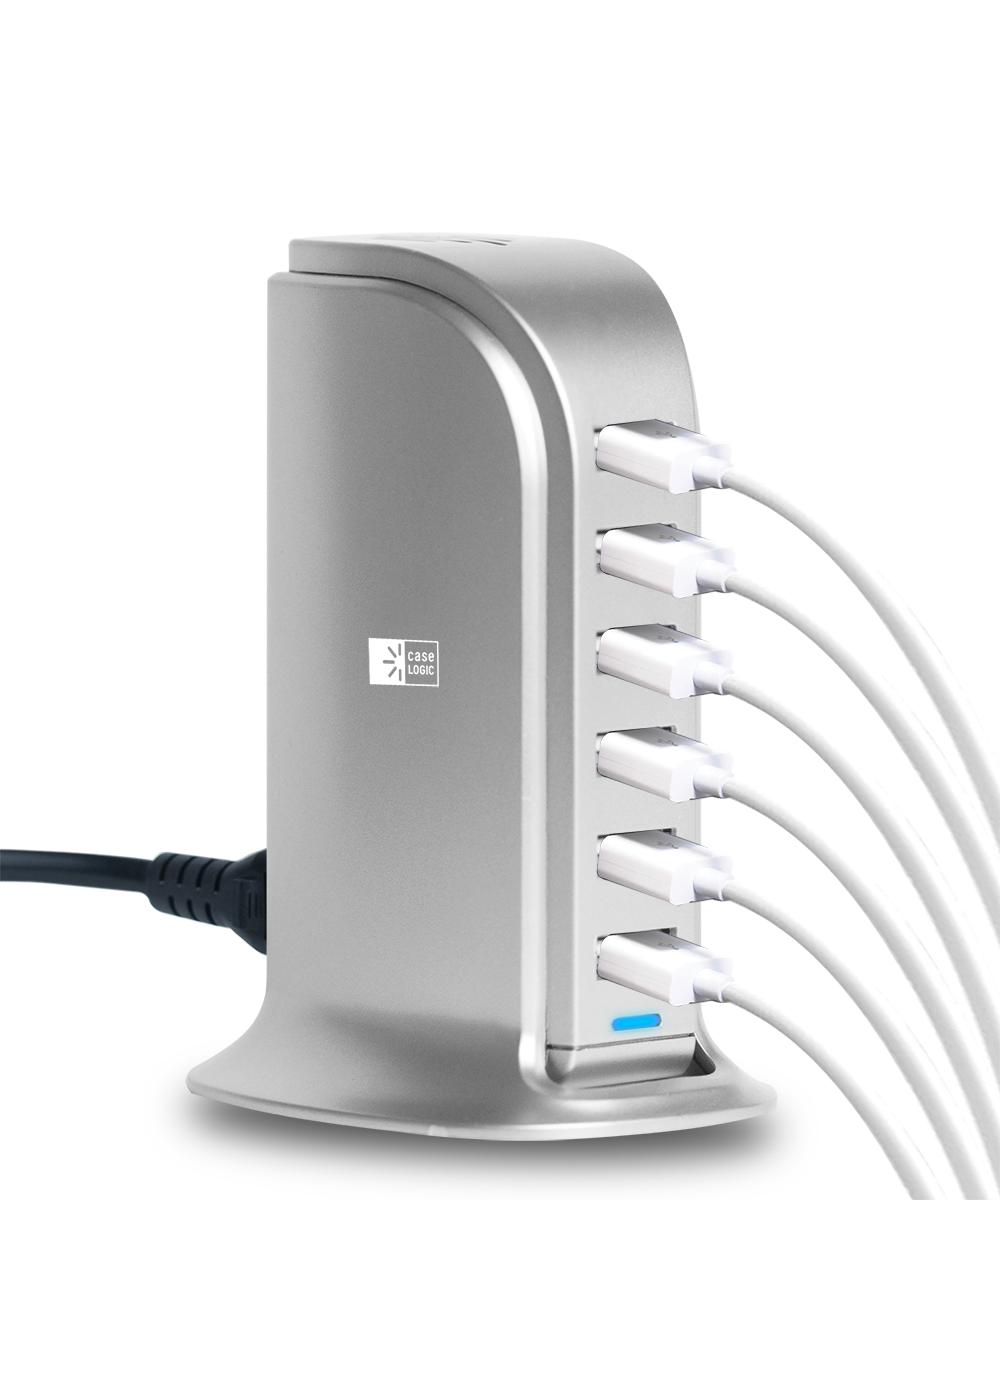 Case Logic Five-Port USB Charging Station - Silver; image 2 of 2